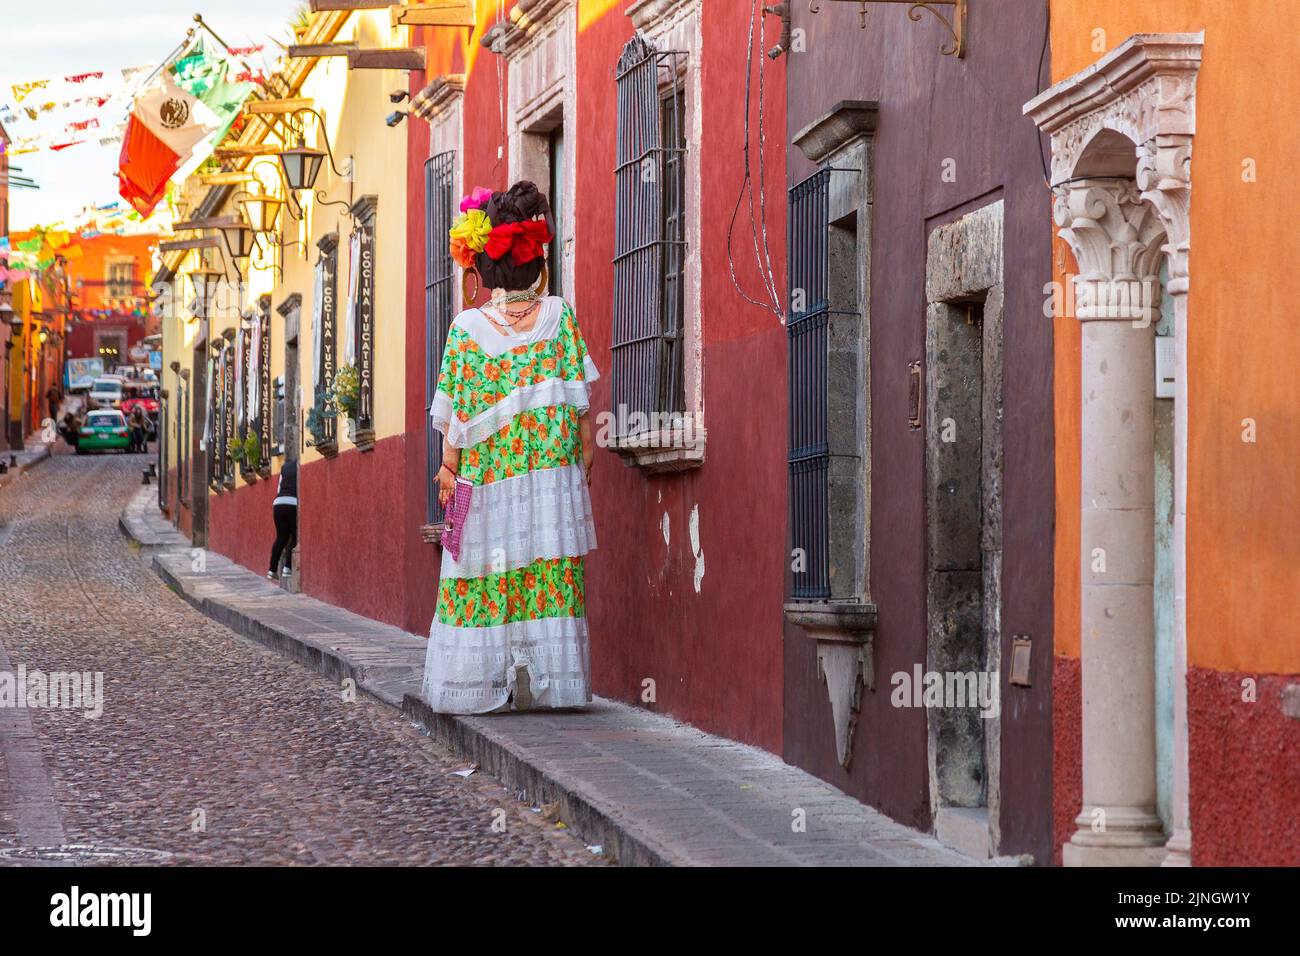 Un mojiganga, ou marionnette géante faite de papier mâché alors qu'il marche dans le centre historique de San Miguel de Allende, Mexique. Banque D'Images